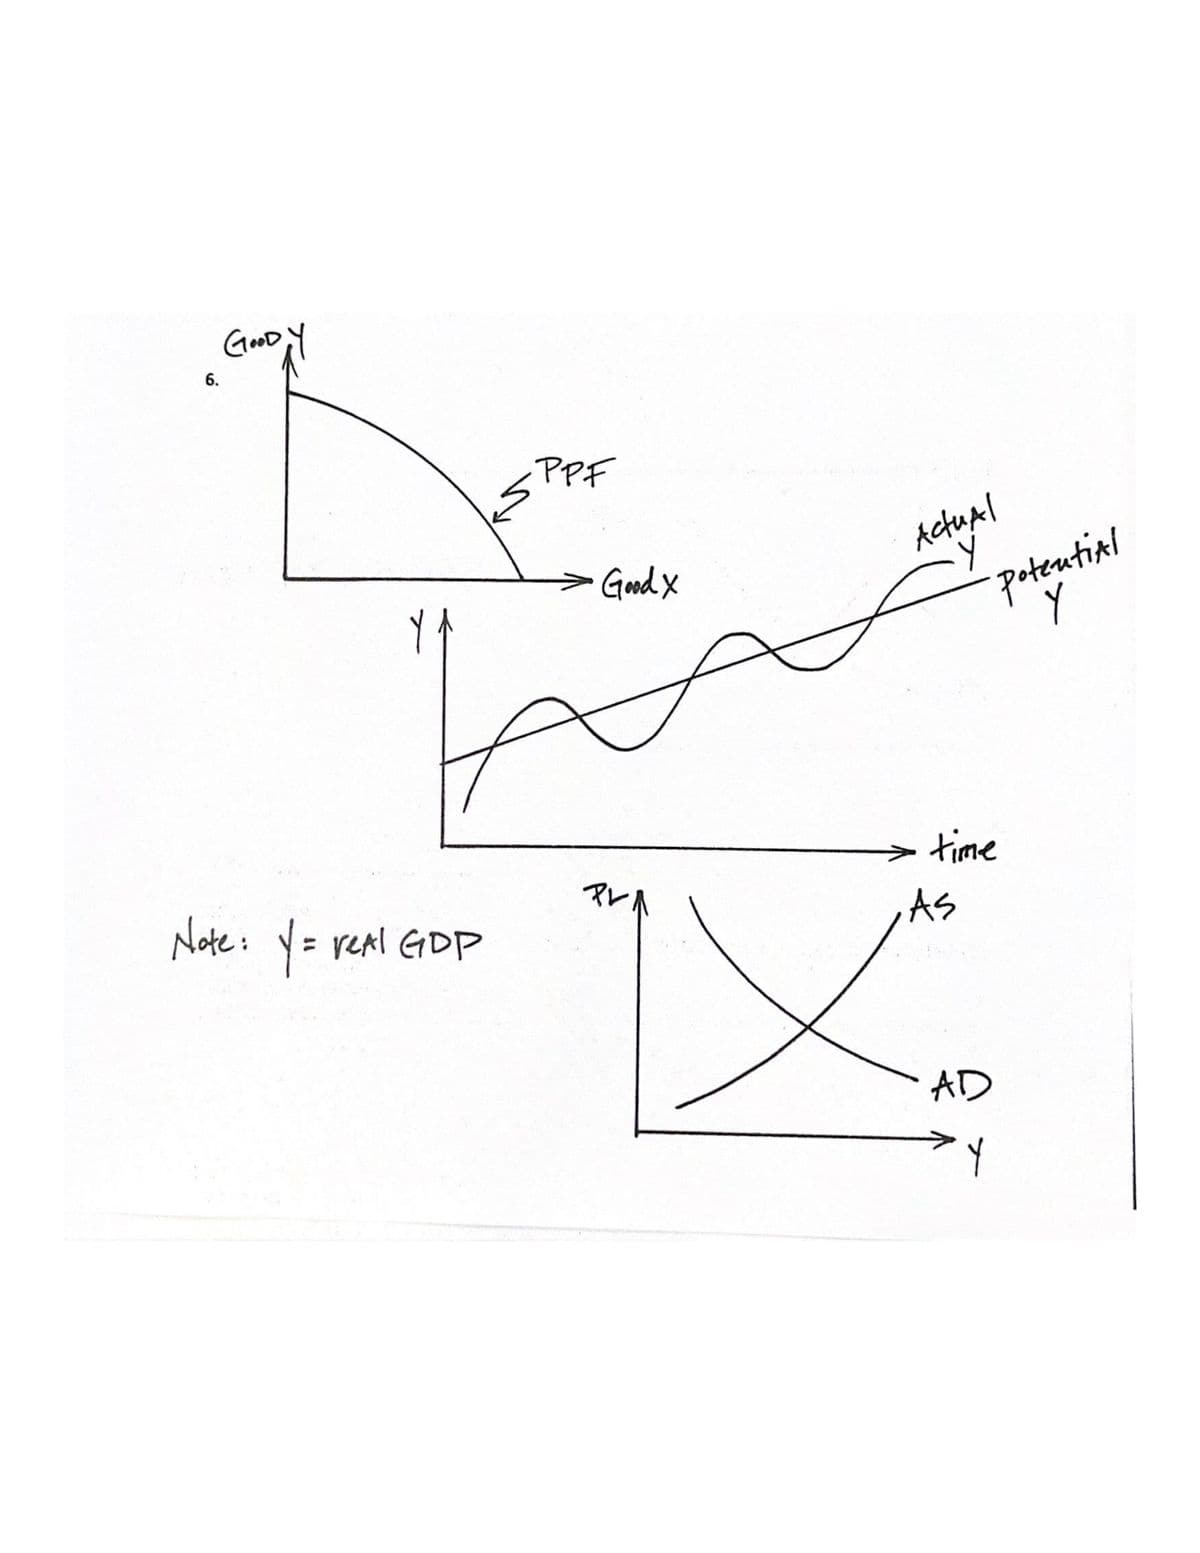 6.
GOOD Y
Note: Y = real GDP
·PPF
Good X
PL
Actual
potential
Y
time
AS
X
AD
Y